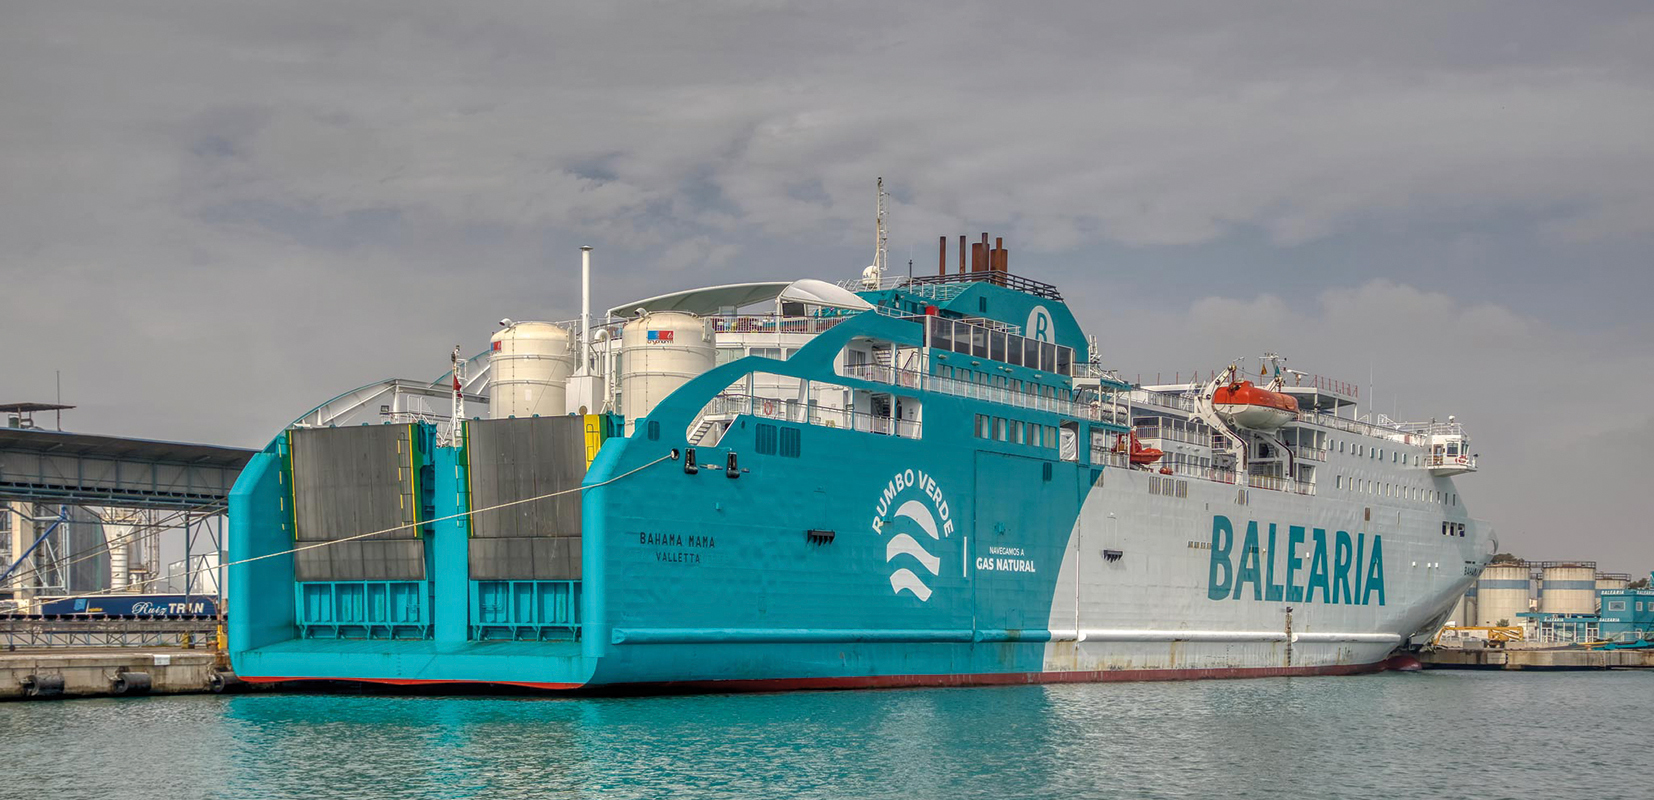 El buque Ro-Ro La Surprise es uno de los que hacen la ruta de la Autopista del mar entre Vigo y Nantes-Saint Nazaire